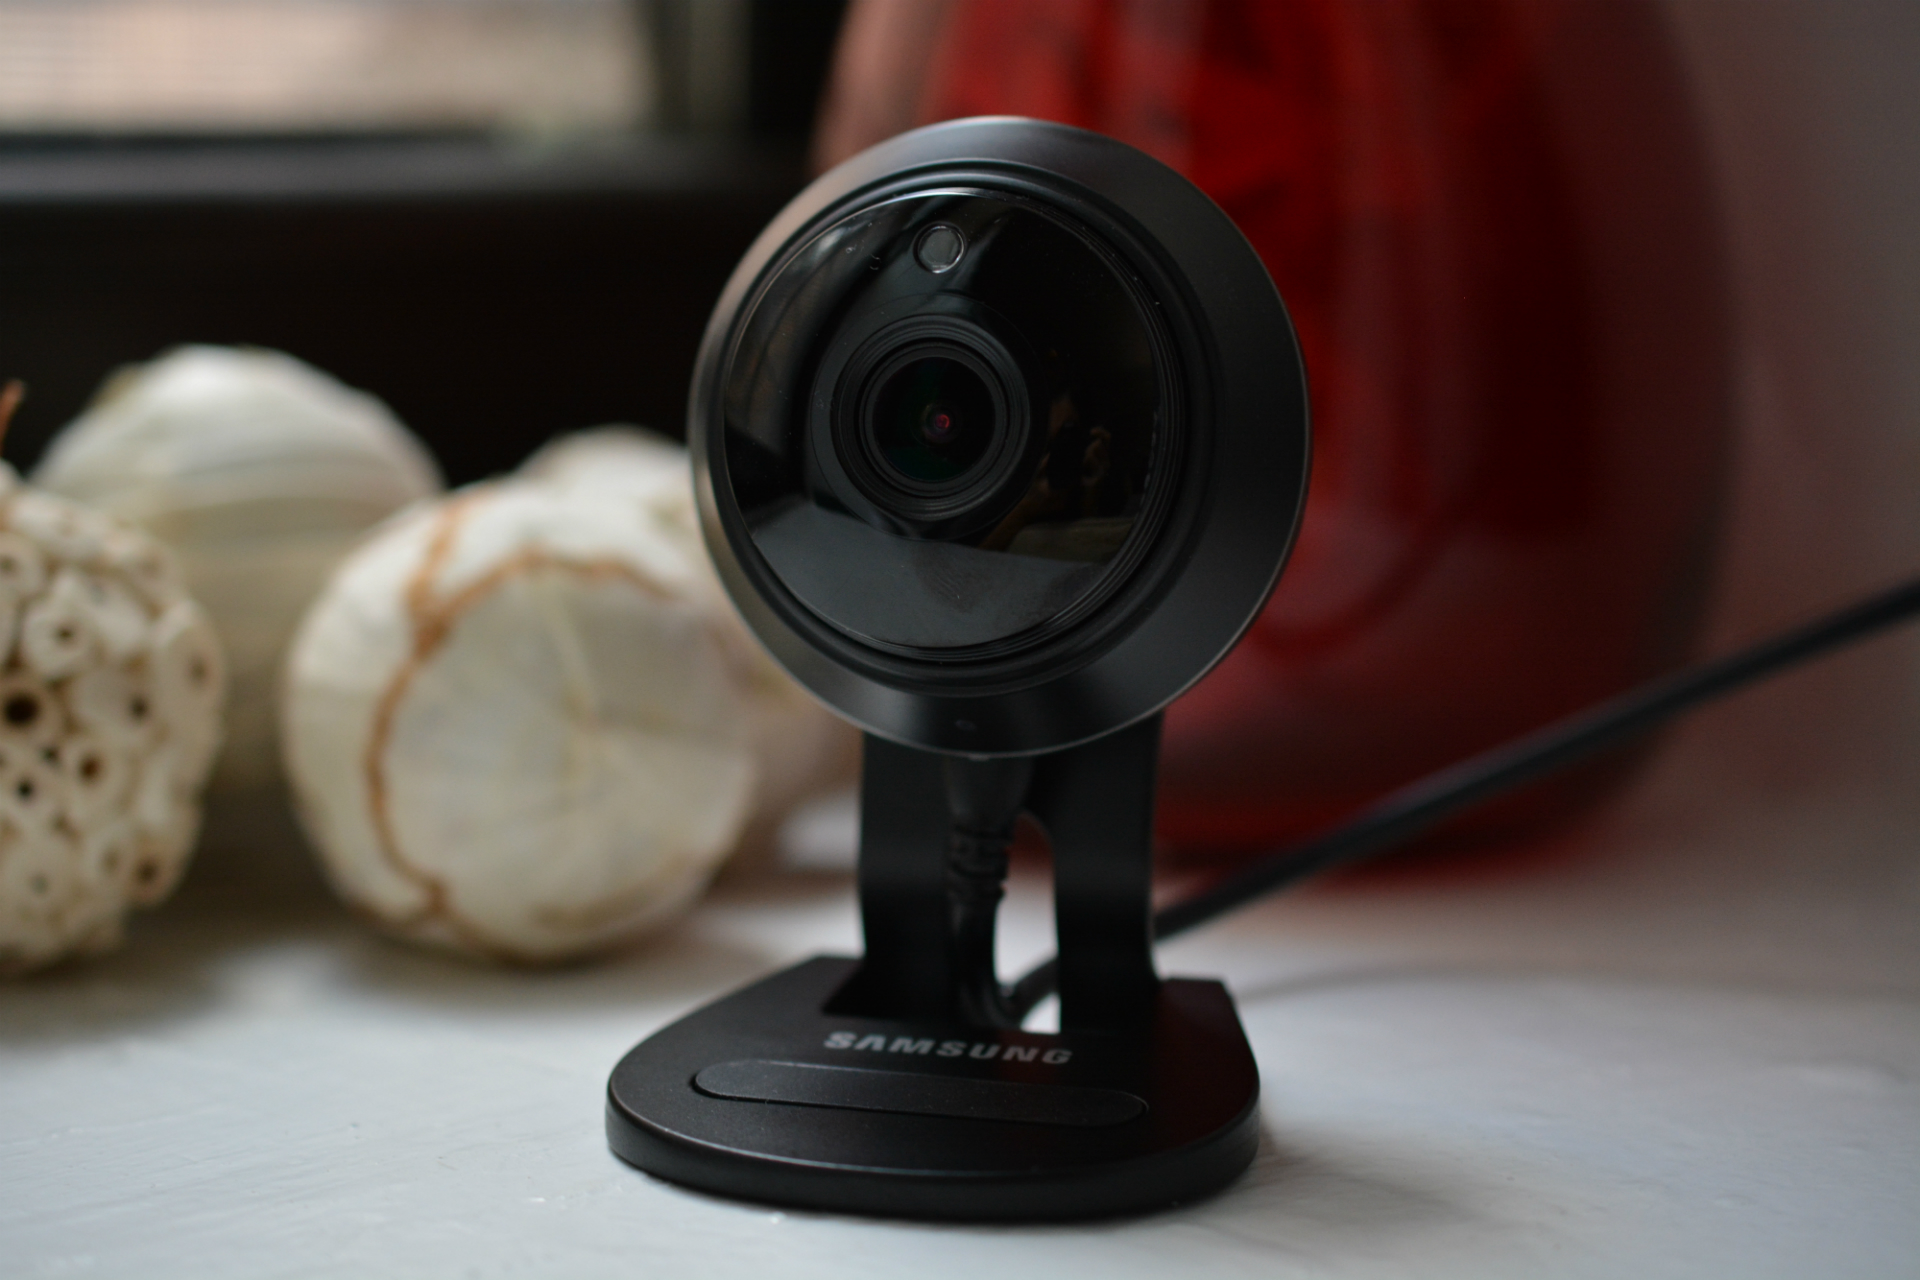 Найден еще один эксплойт охранной камеры Samsung Smartcam HD Plus